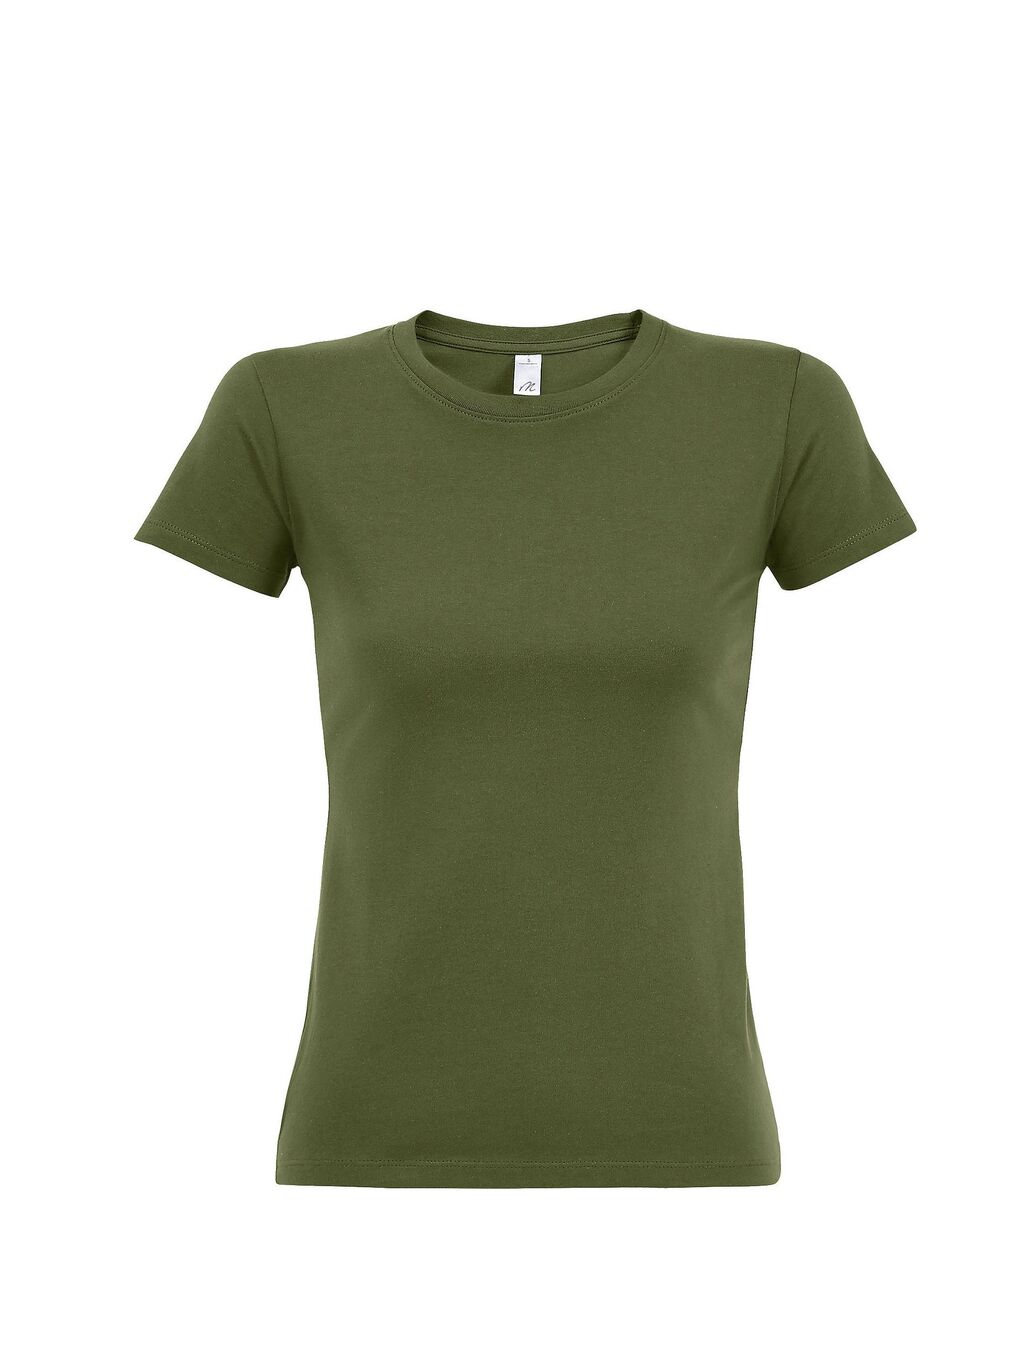 Футболка женская 190, зеленый хаки, футболки с логотипом на заказ